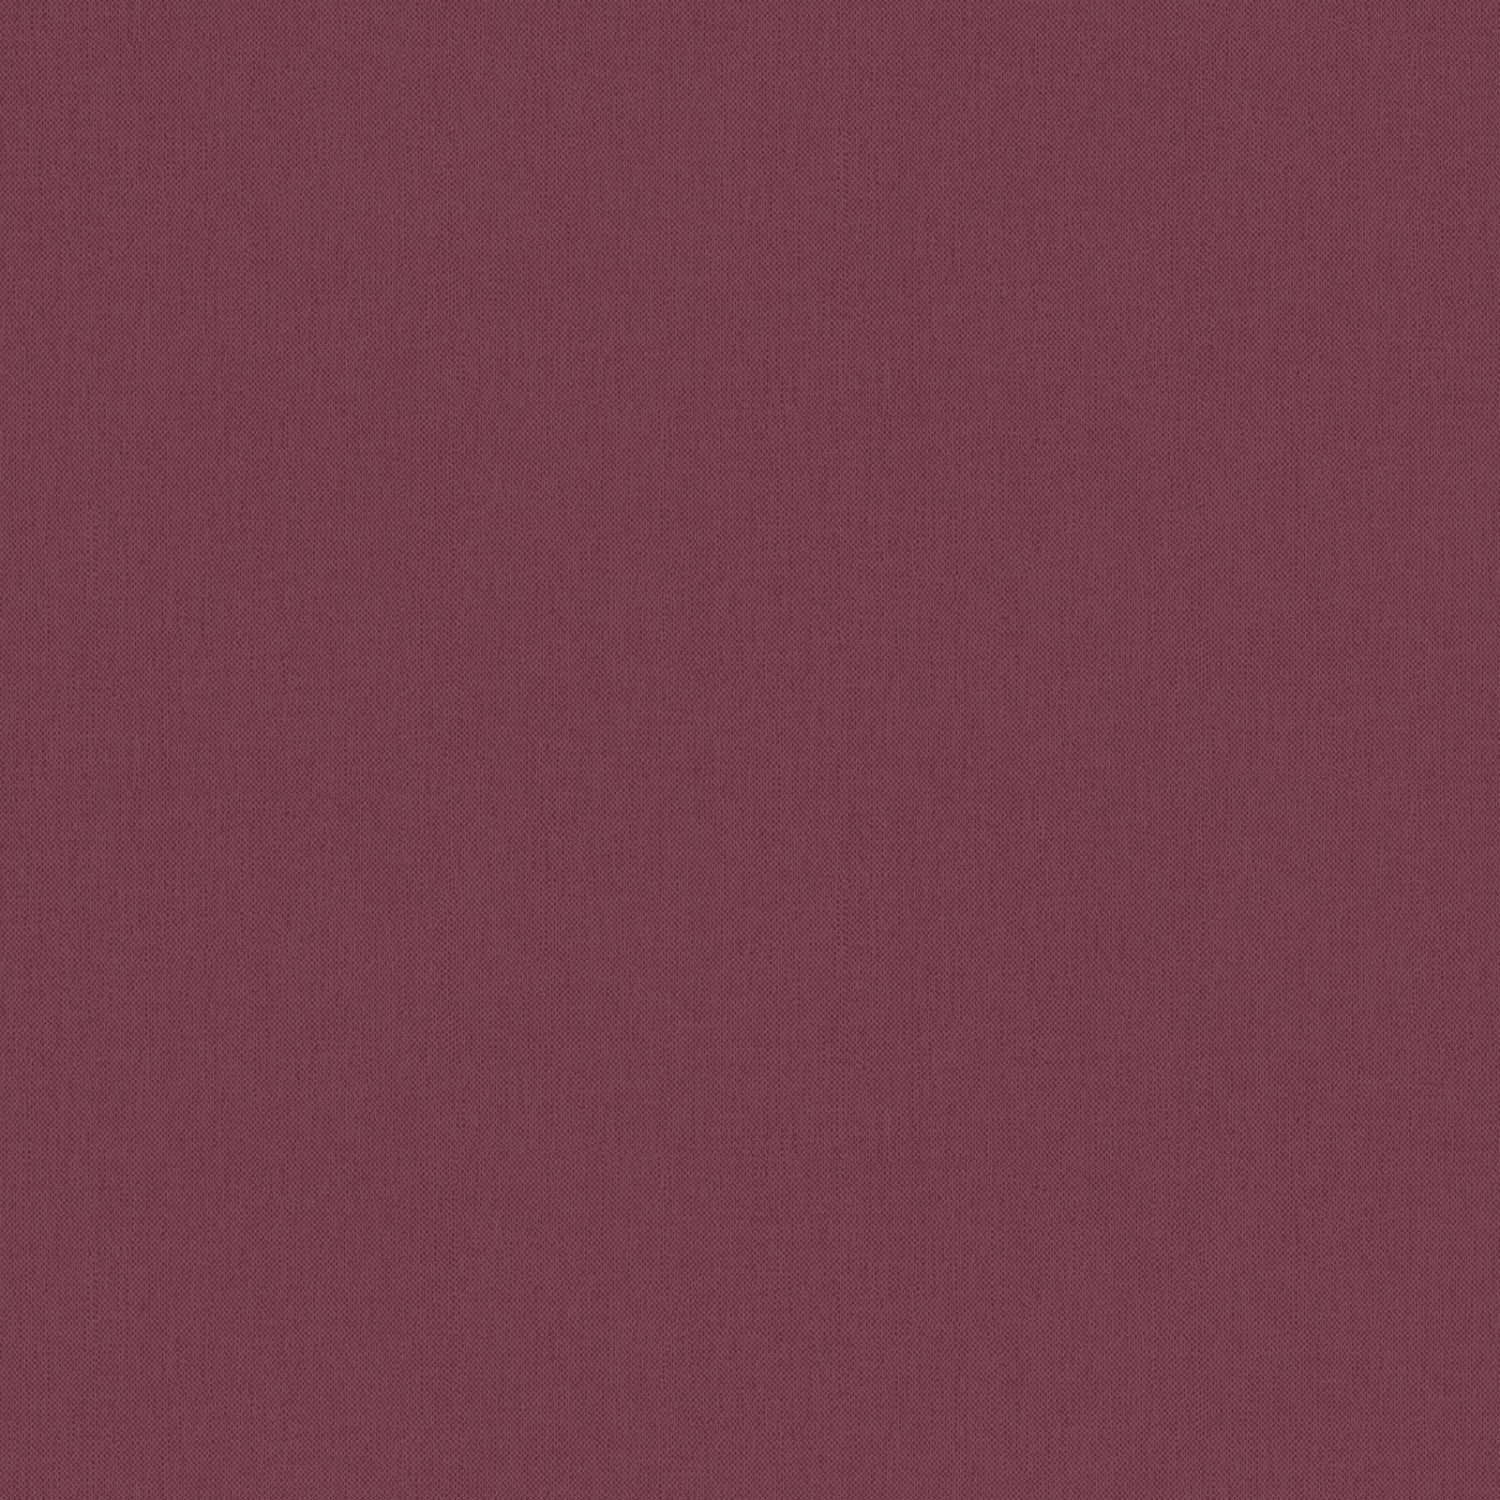 Bricoflor Bordeaux Rote Vliestapete Elegante Schlafzimmer und Wohnzimmer Tapete in Weinrot Einfarbige Wandtapete in Textiloptik von Bricoflor